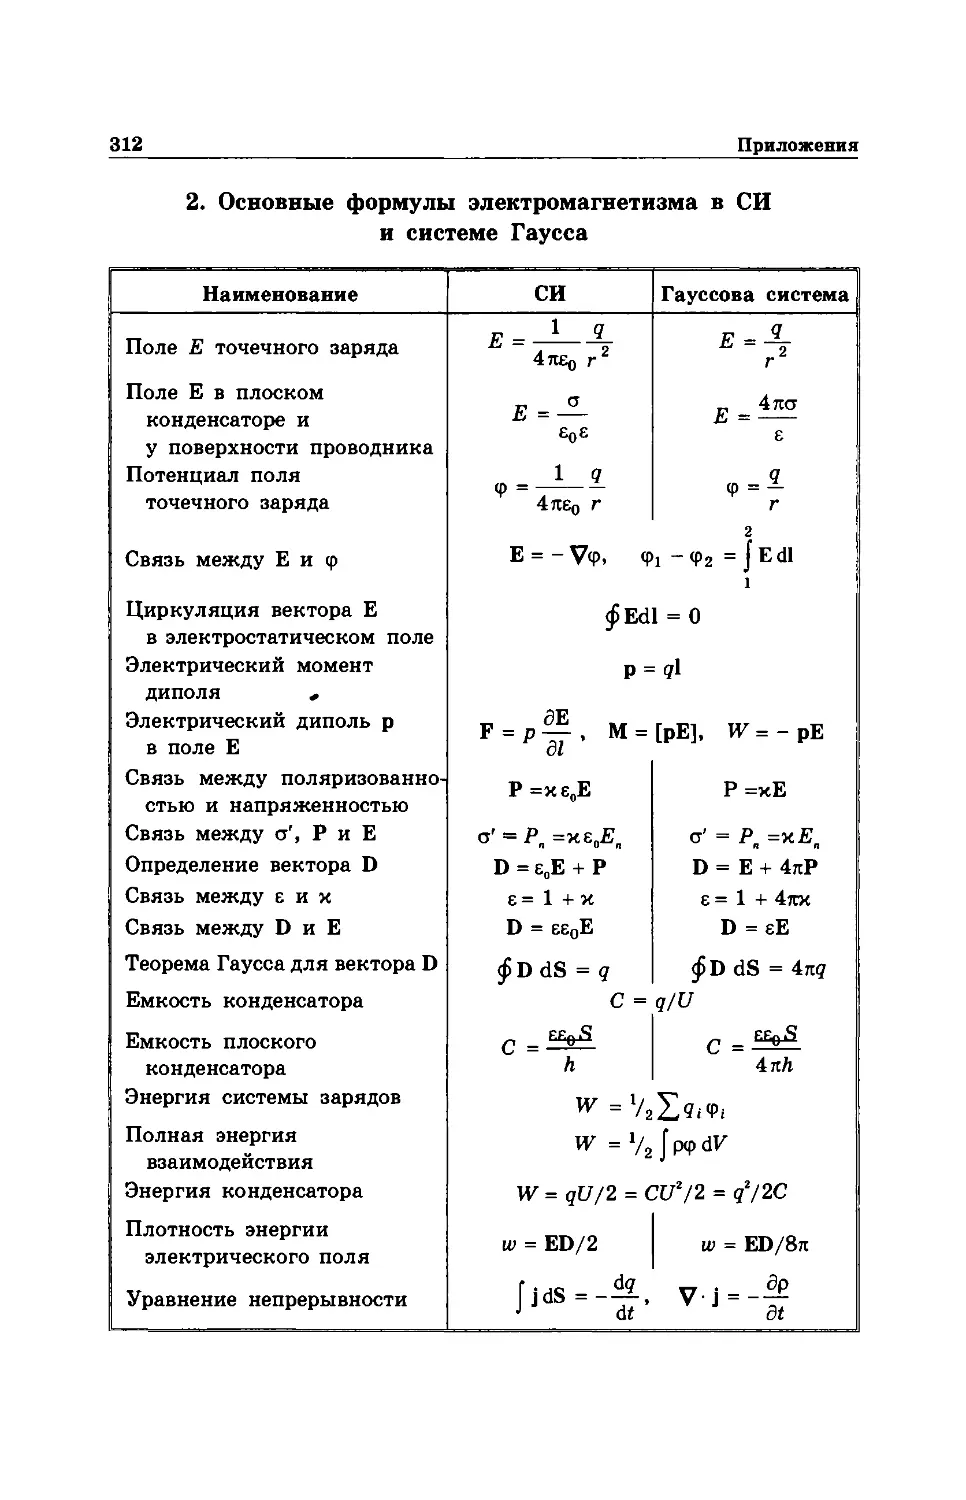 2. Основные формулы электромагнетизма в СИ и системе Гаусса